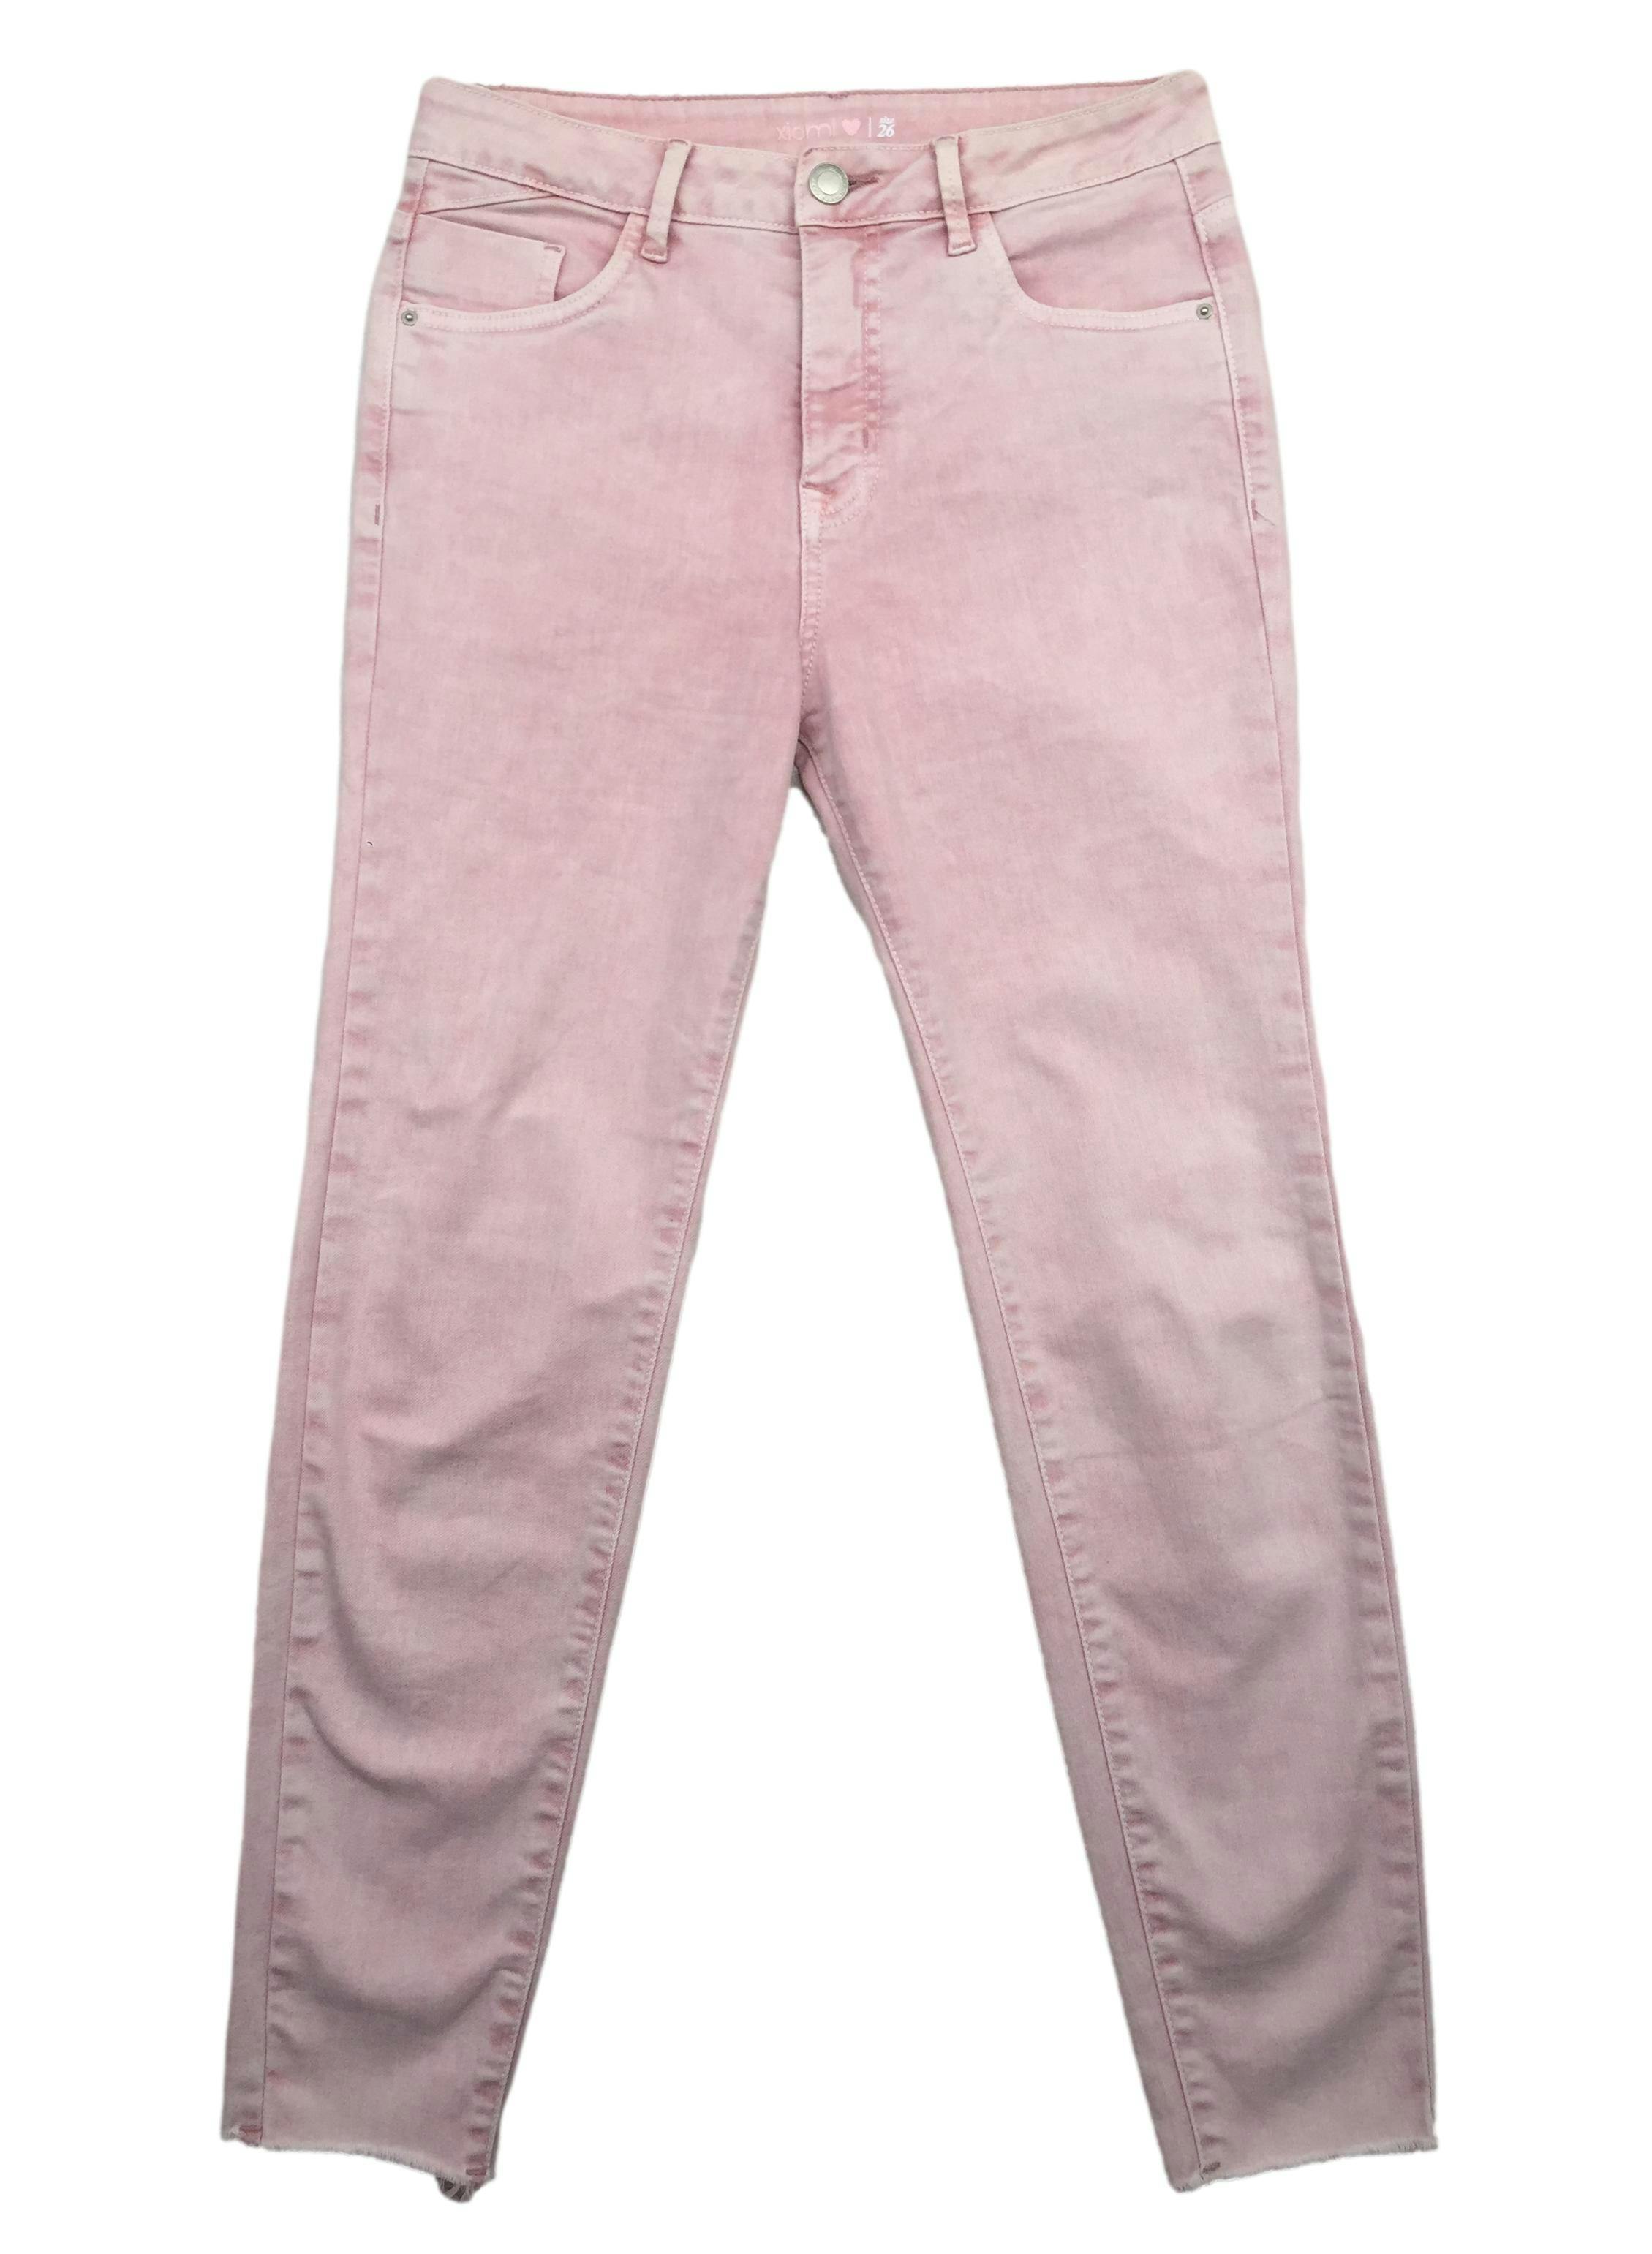 Skinny jean rosa efecto lavado y basta cropped. Cintura 68cm Tiro 26cm Largo 89cm